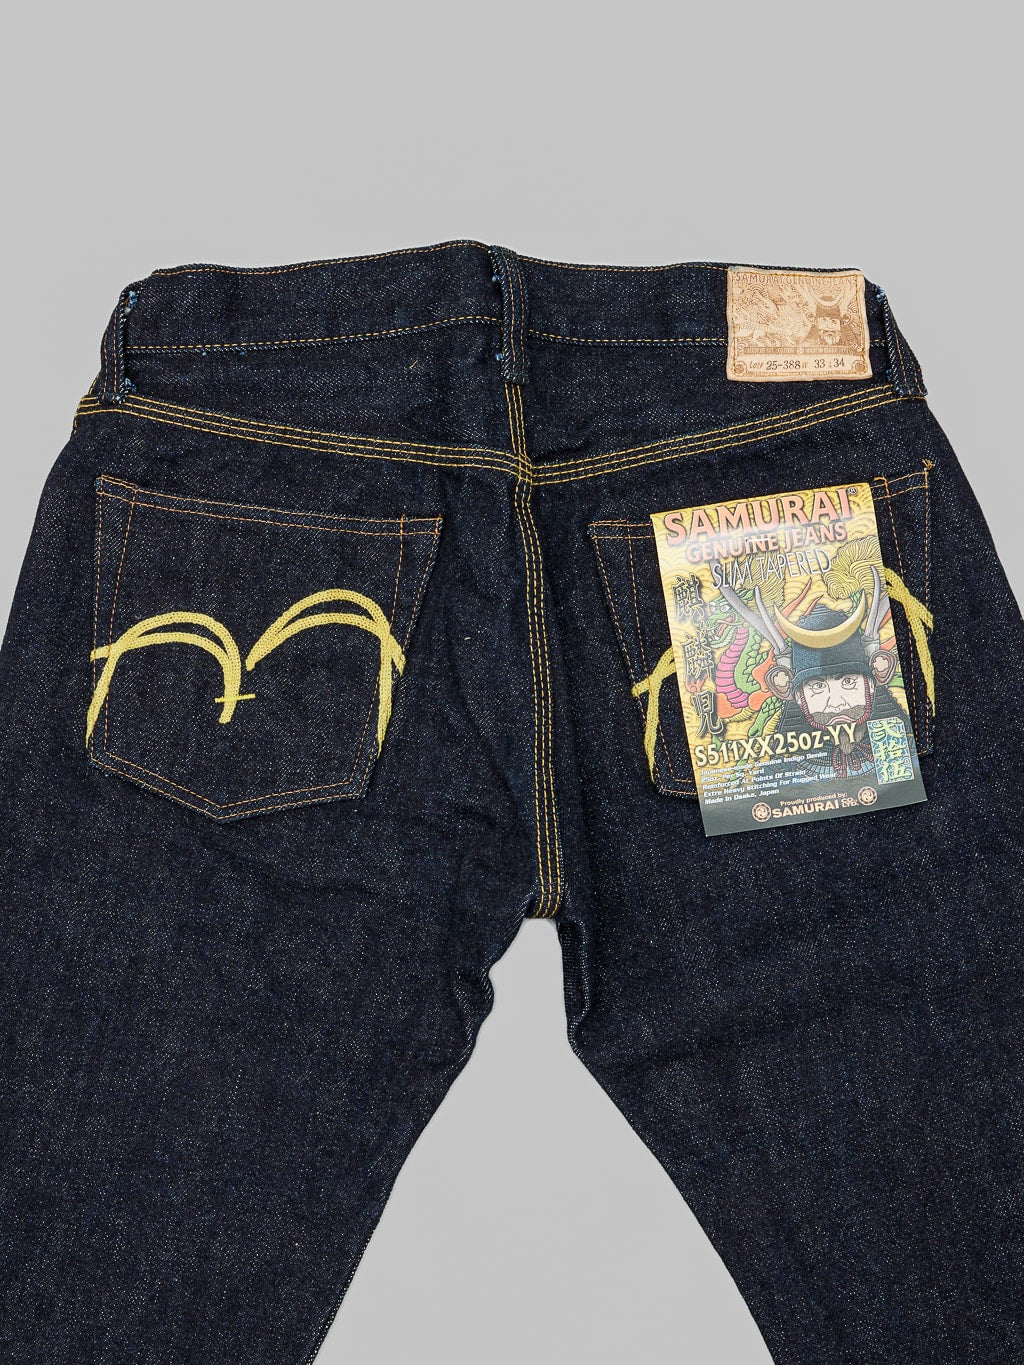 Samurai Jeans S511XX 25oz Kirinji Slim Tapered selvedge Jeans back pockets